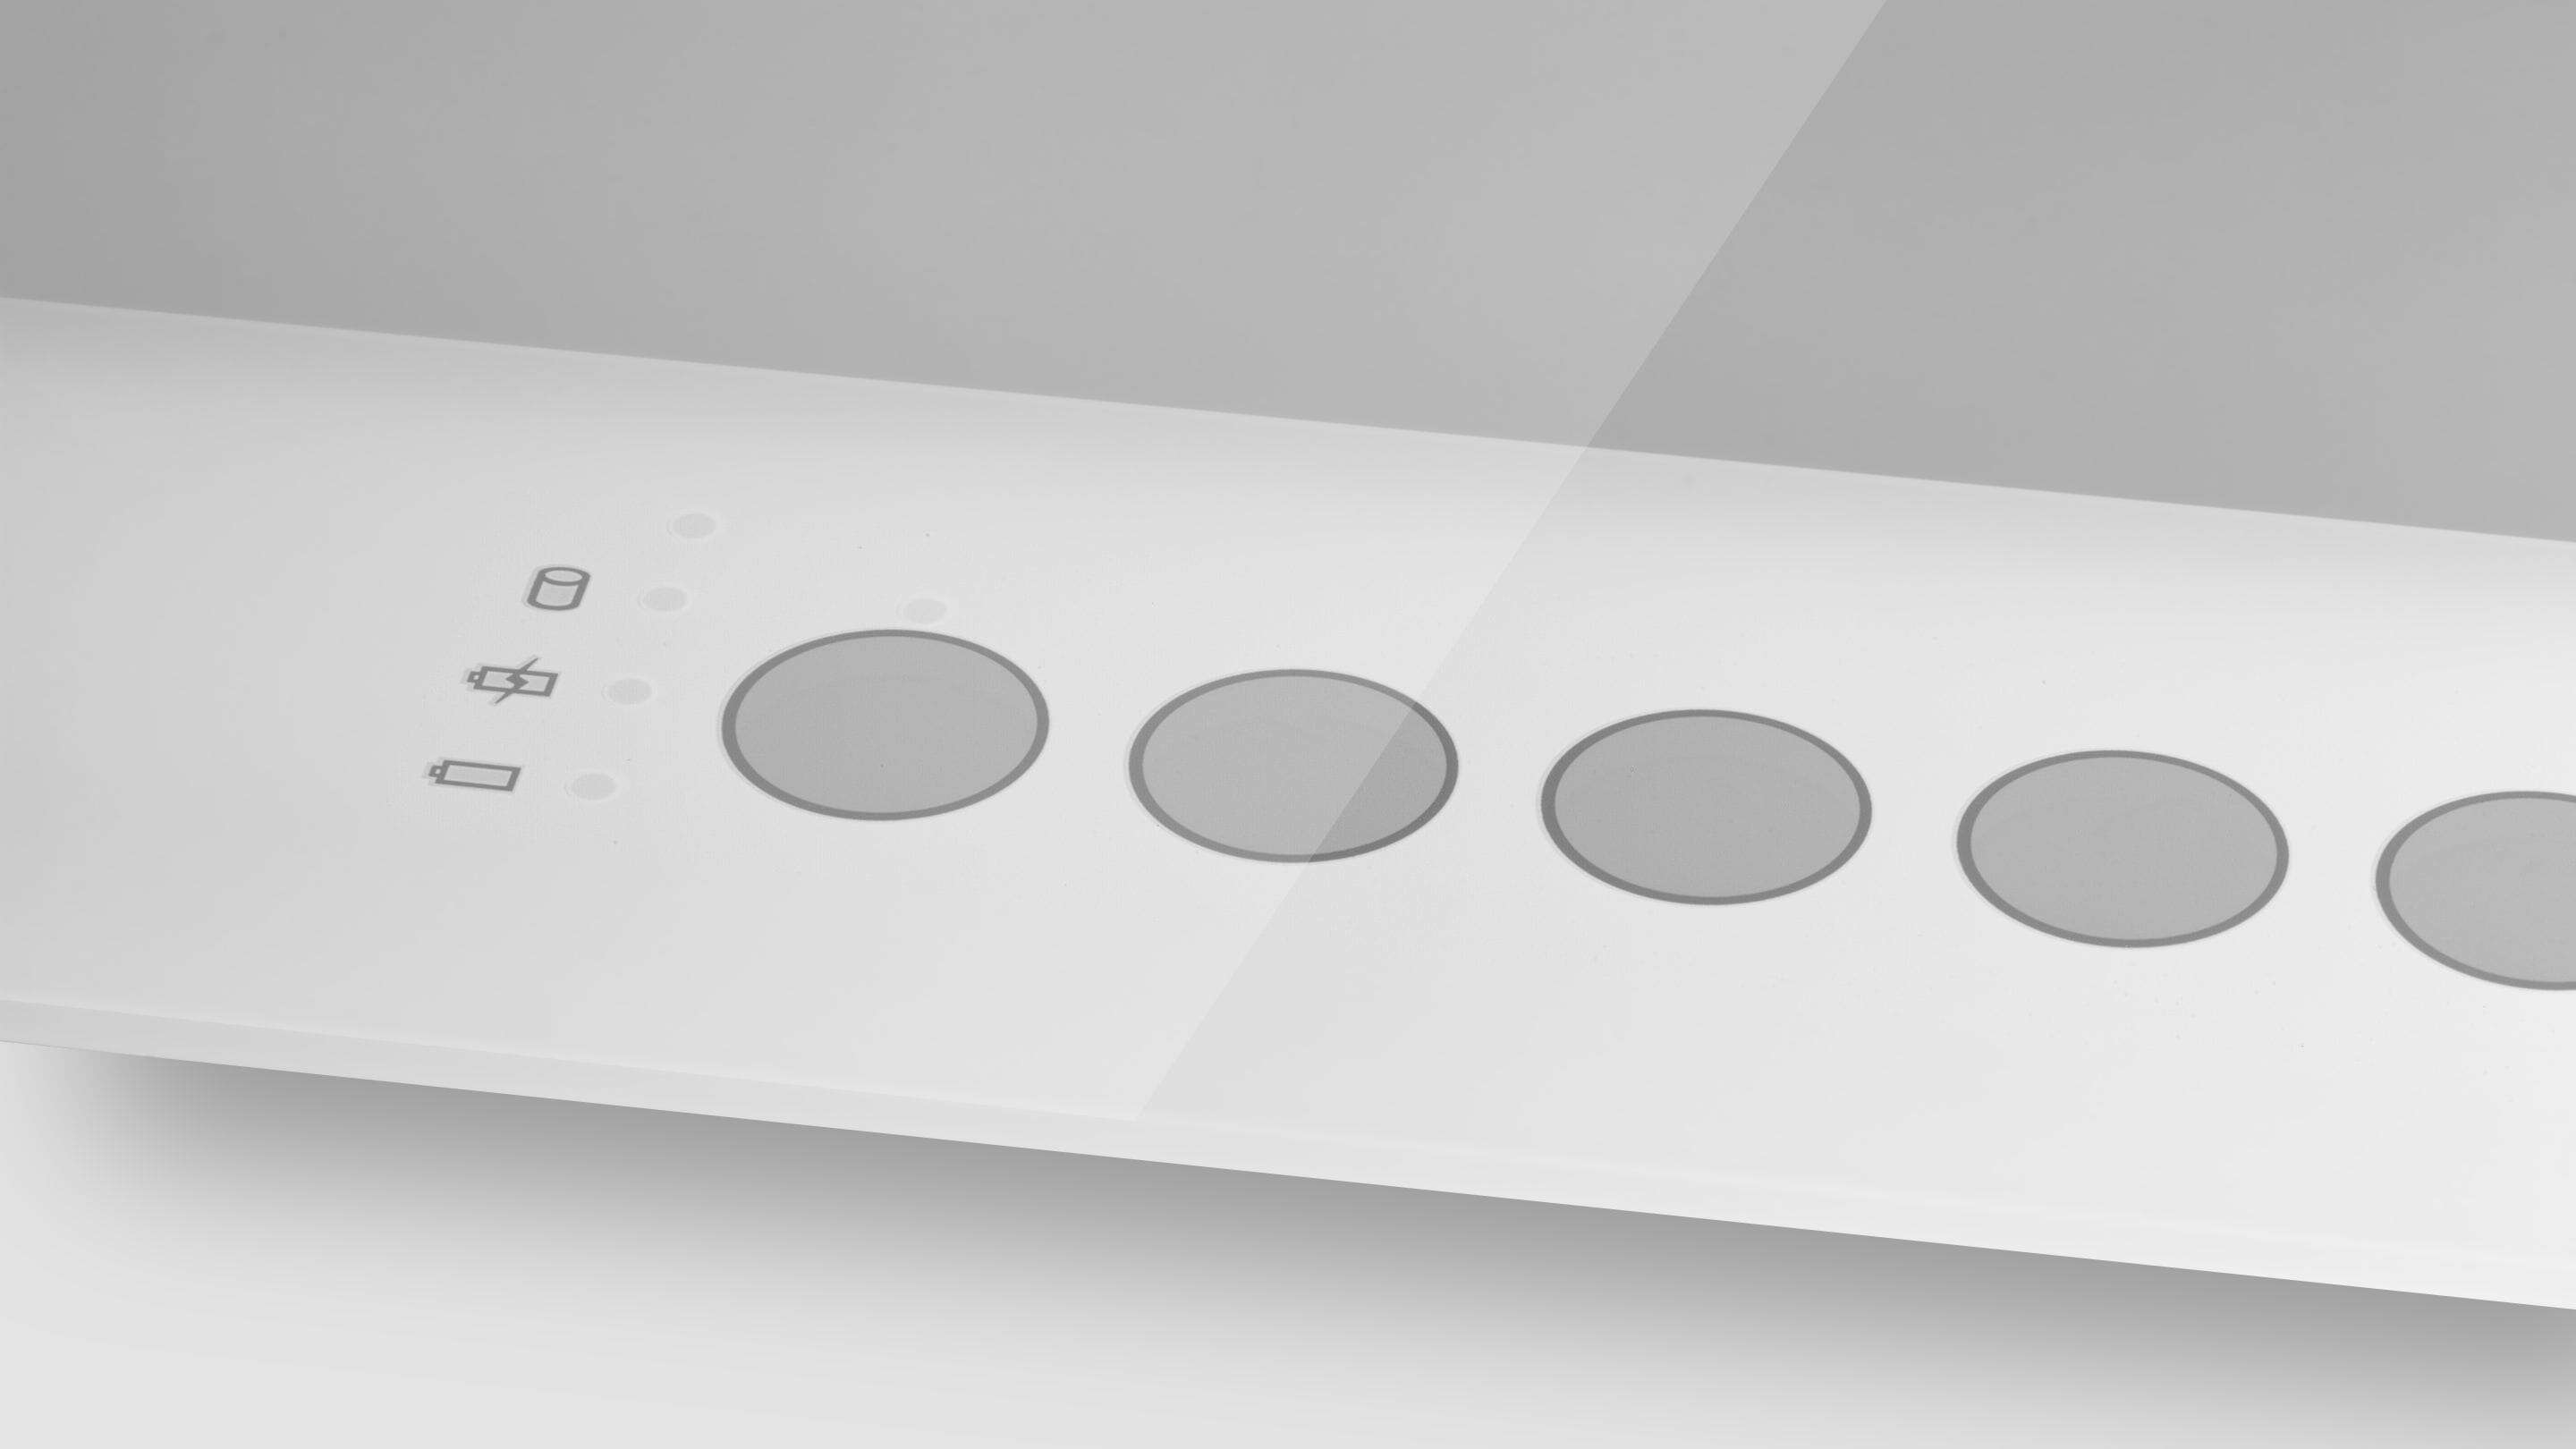 PCAP Touch Screen - Butoane imprimate din sticlă un obiect dreptunghiular alb cu cercuri pe el